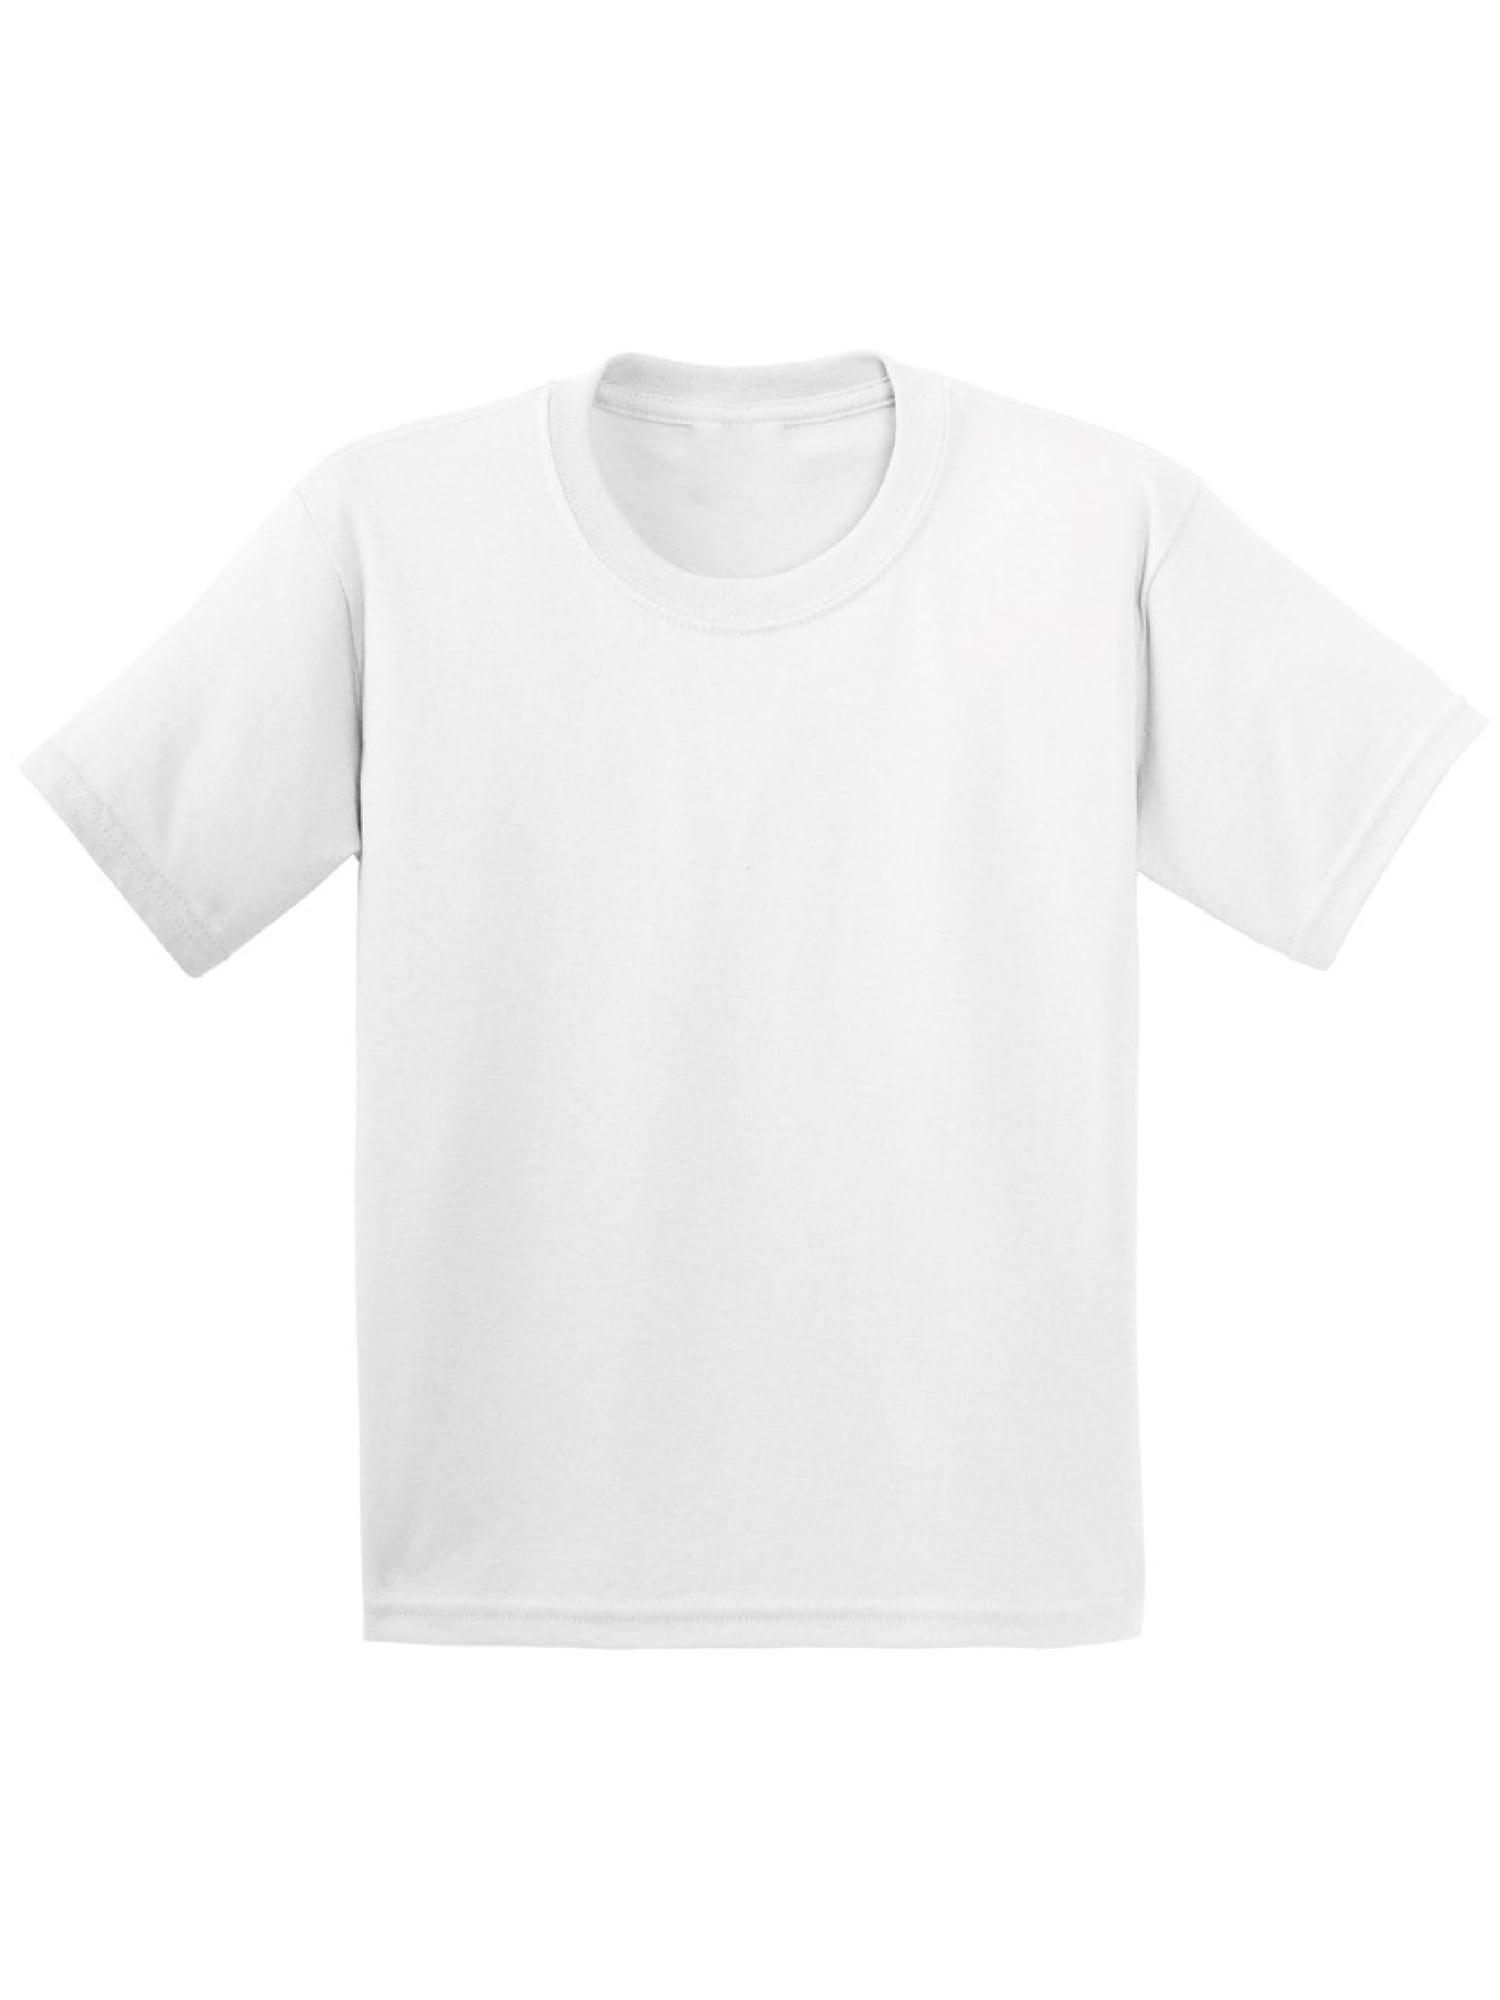 BASIC TEES INFANT T-Shirt Colors Ringspun Cotton Plain Colors 6 12 18 24 MONTHS 